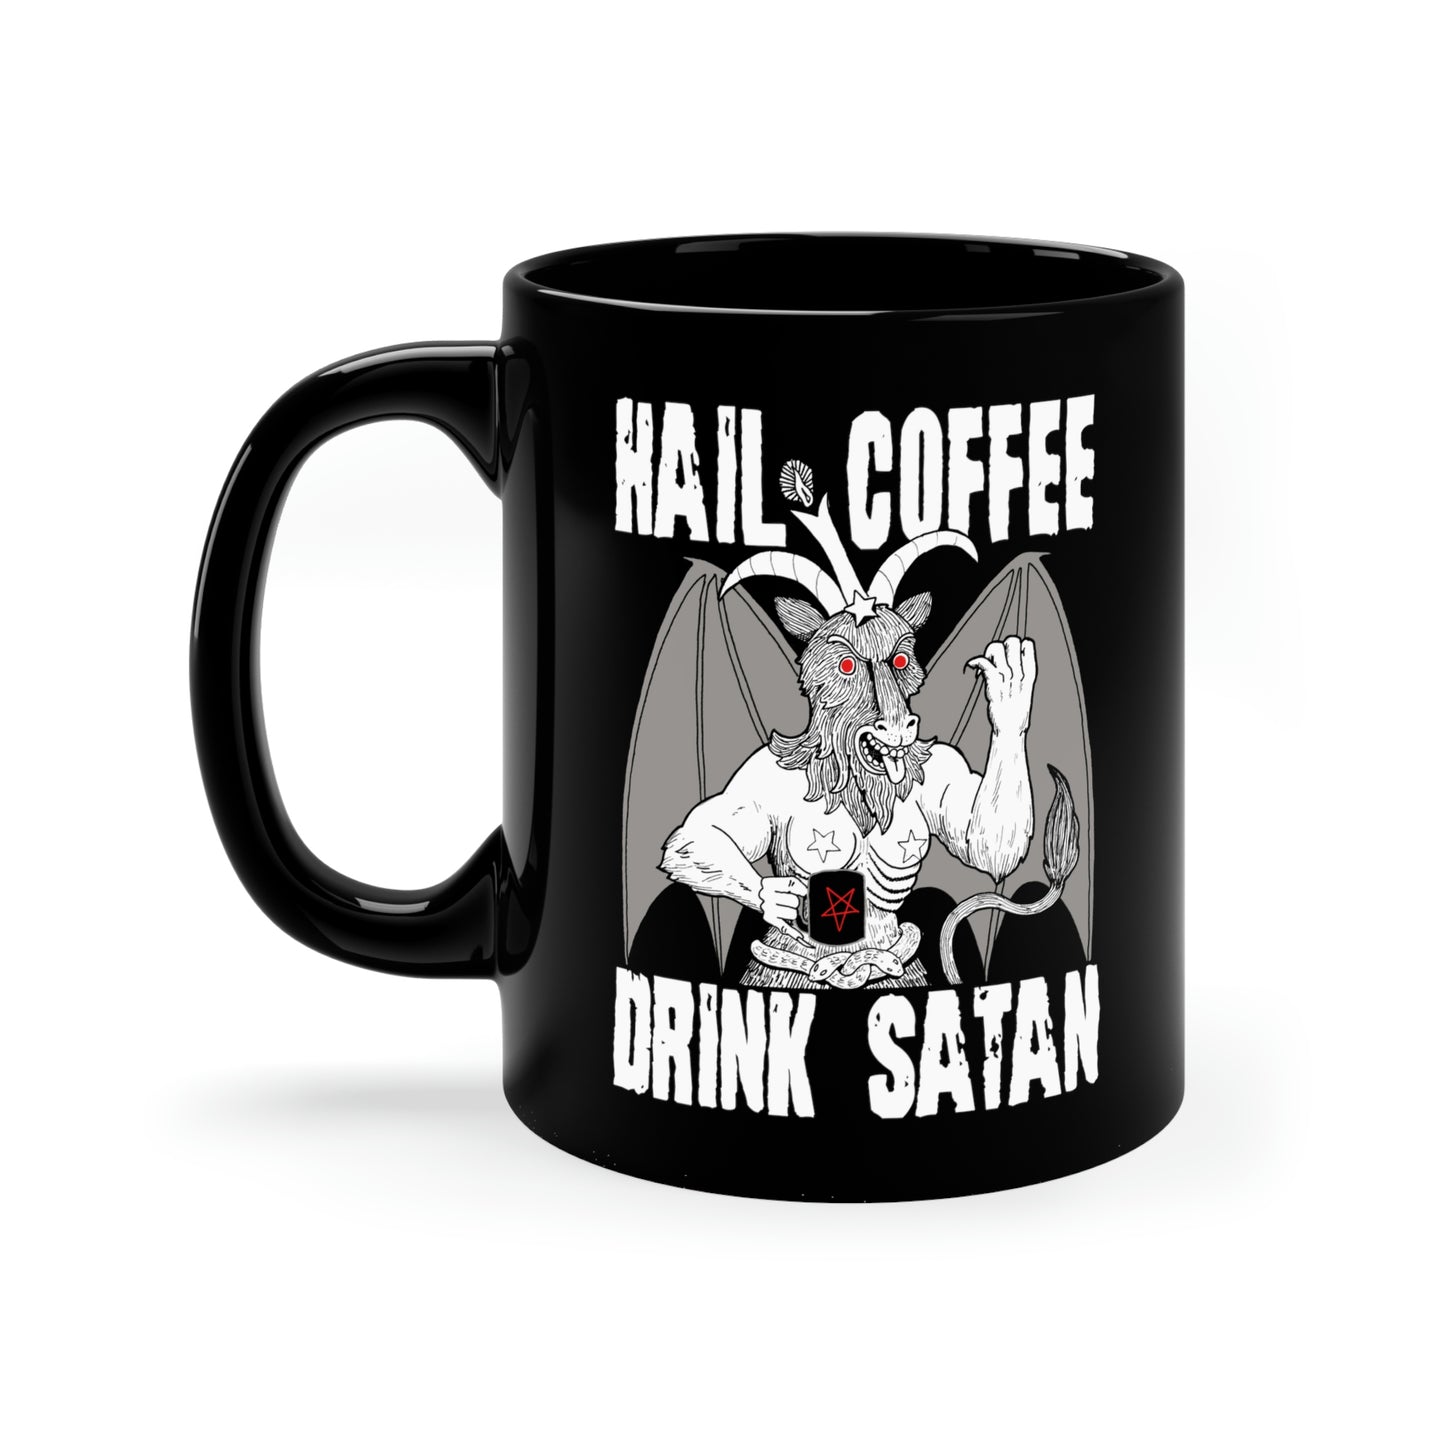 Hail Coffee, Drink Satan Mug